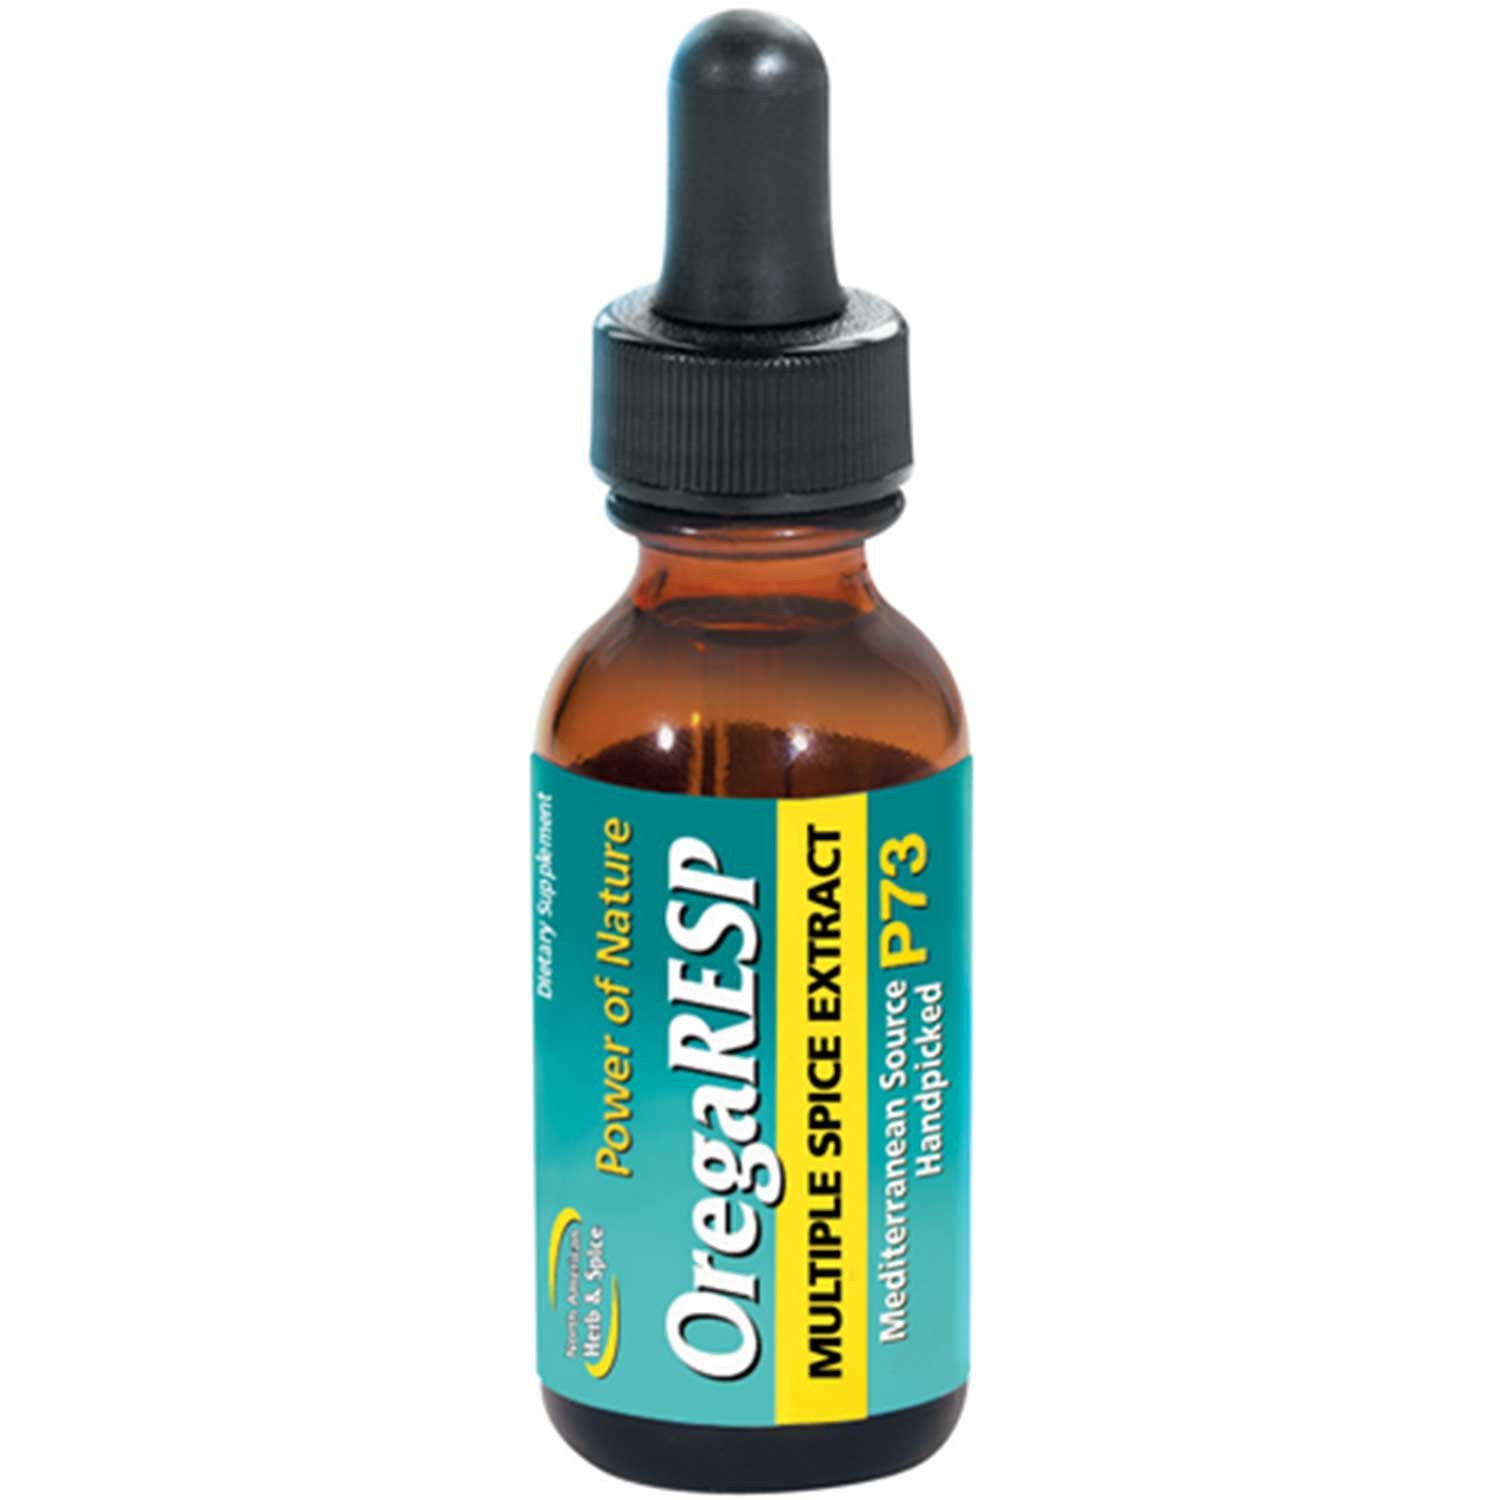 North American Herb & Spice OregaRESP P73 Oil, 30 ml